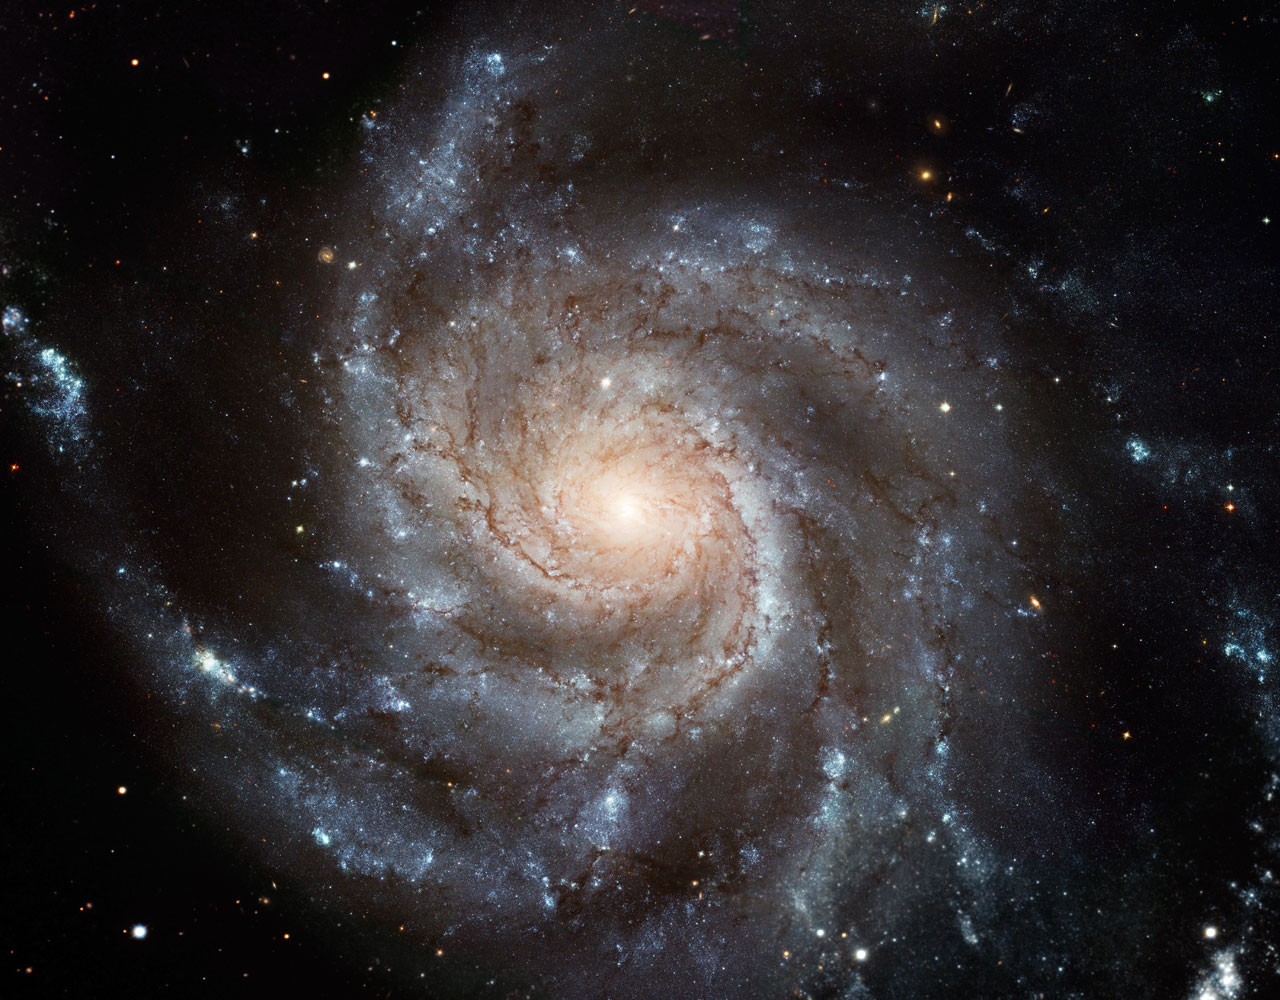 Die Spiralgalaxie M101 oder Feuerradgalaxie liegt im Sternbild Ursa Major.